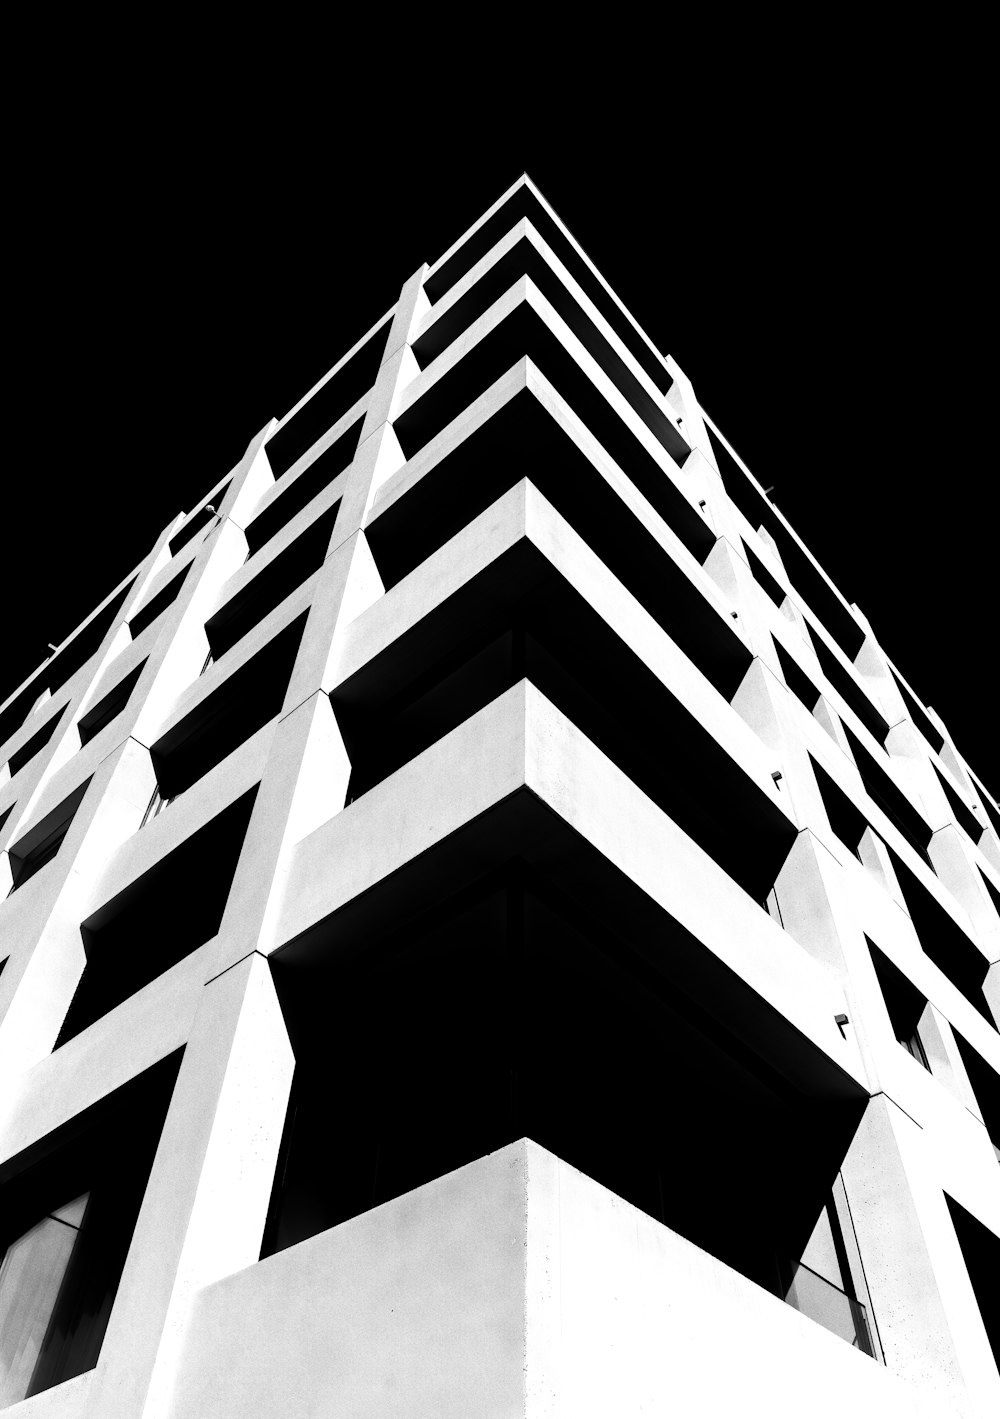 Una foto en blanco y negro de un edificio alto